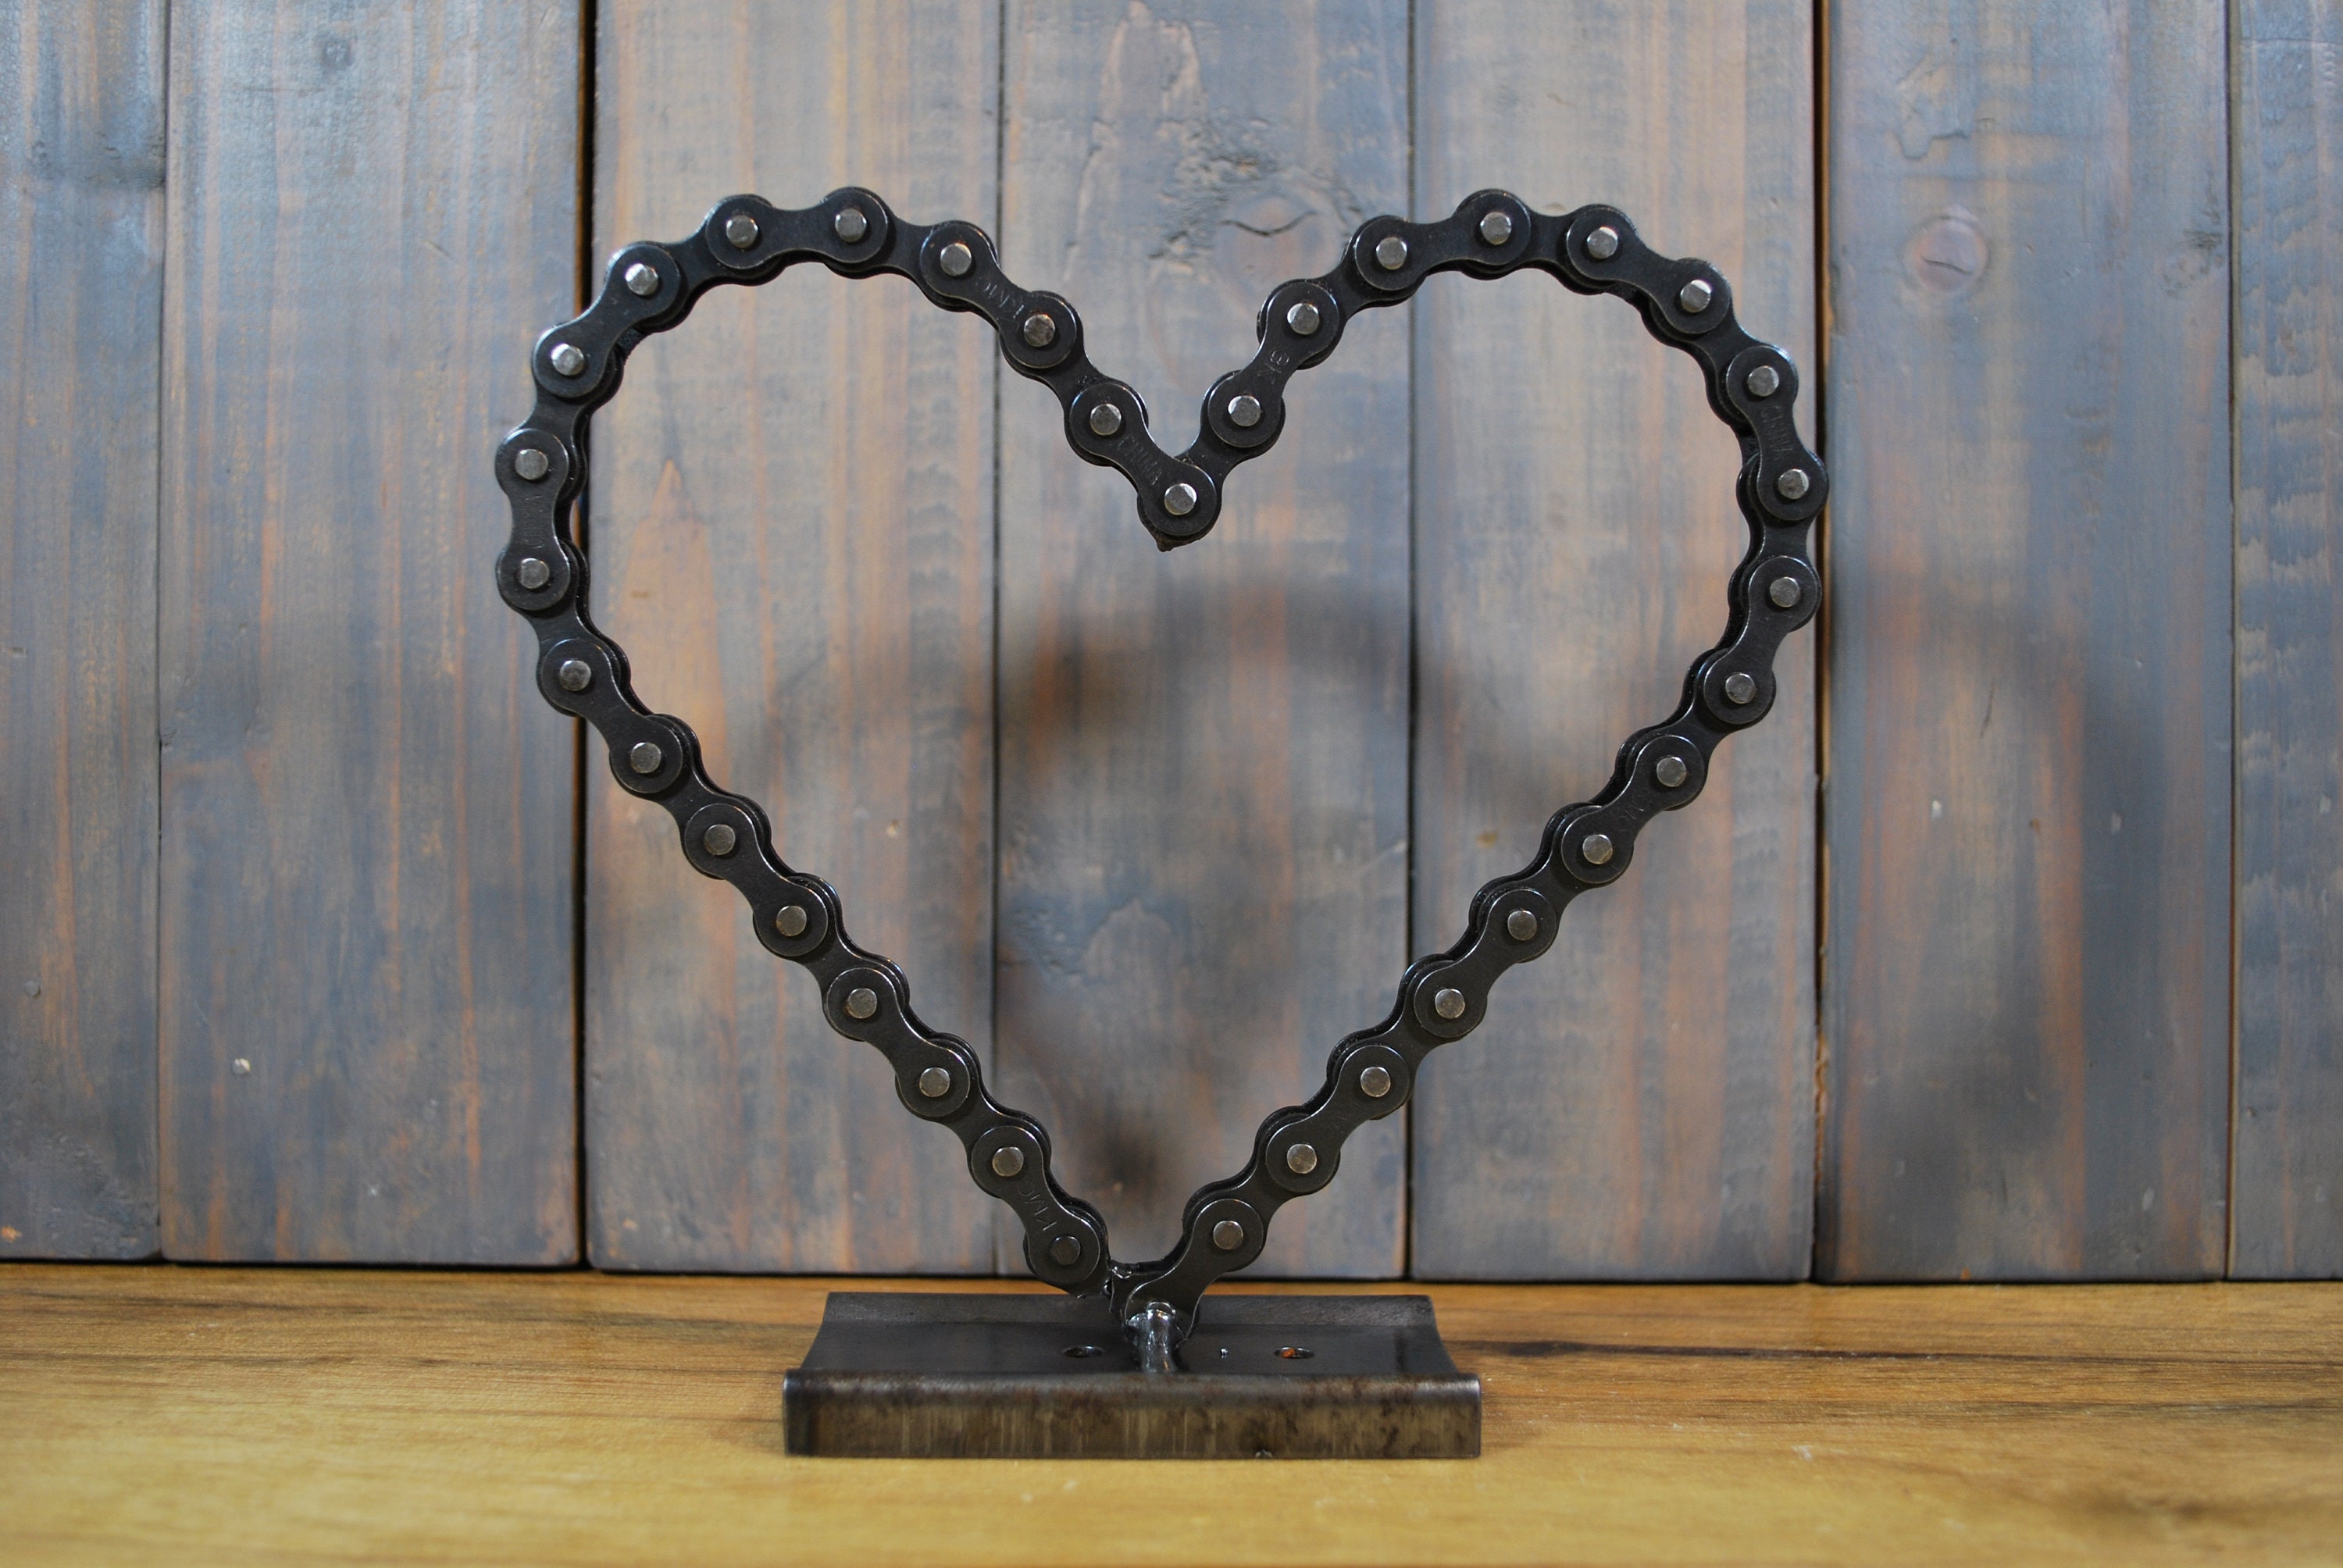 Scrap Metal Folk Art Sculpture Heart Shaped Auto Parts & Tools Hand Welded  8.75”